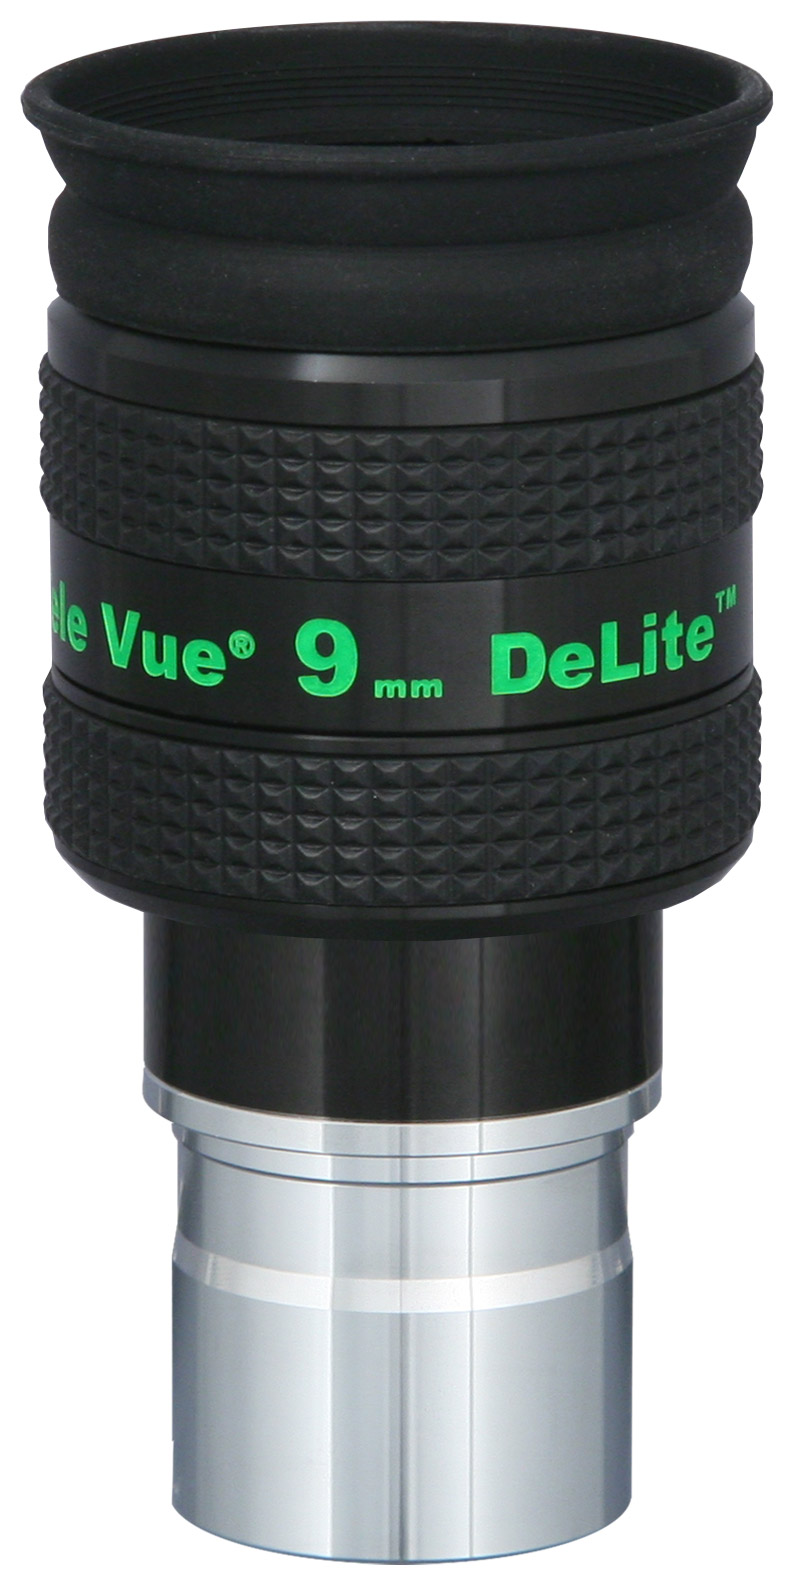 DeLite 9mm Eyepiece